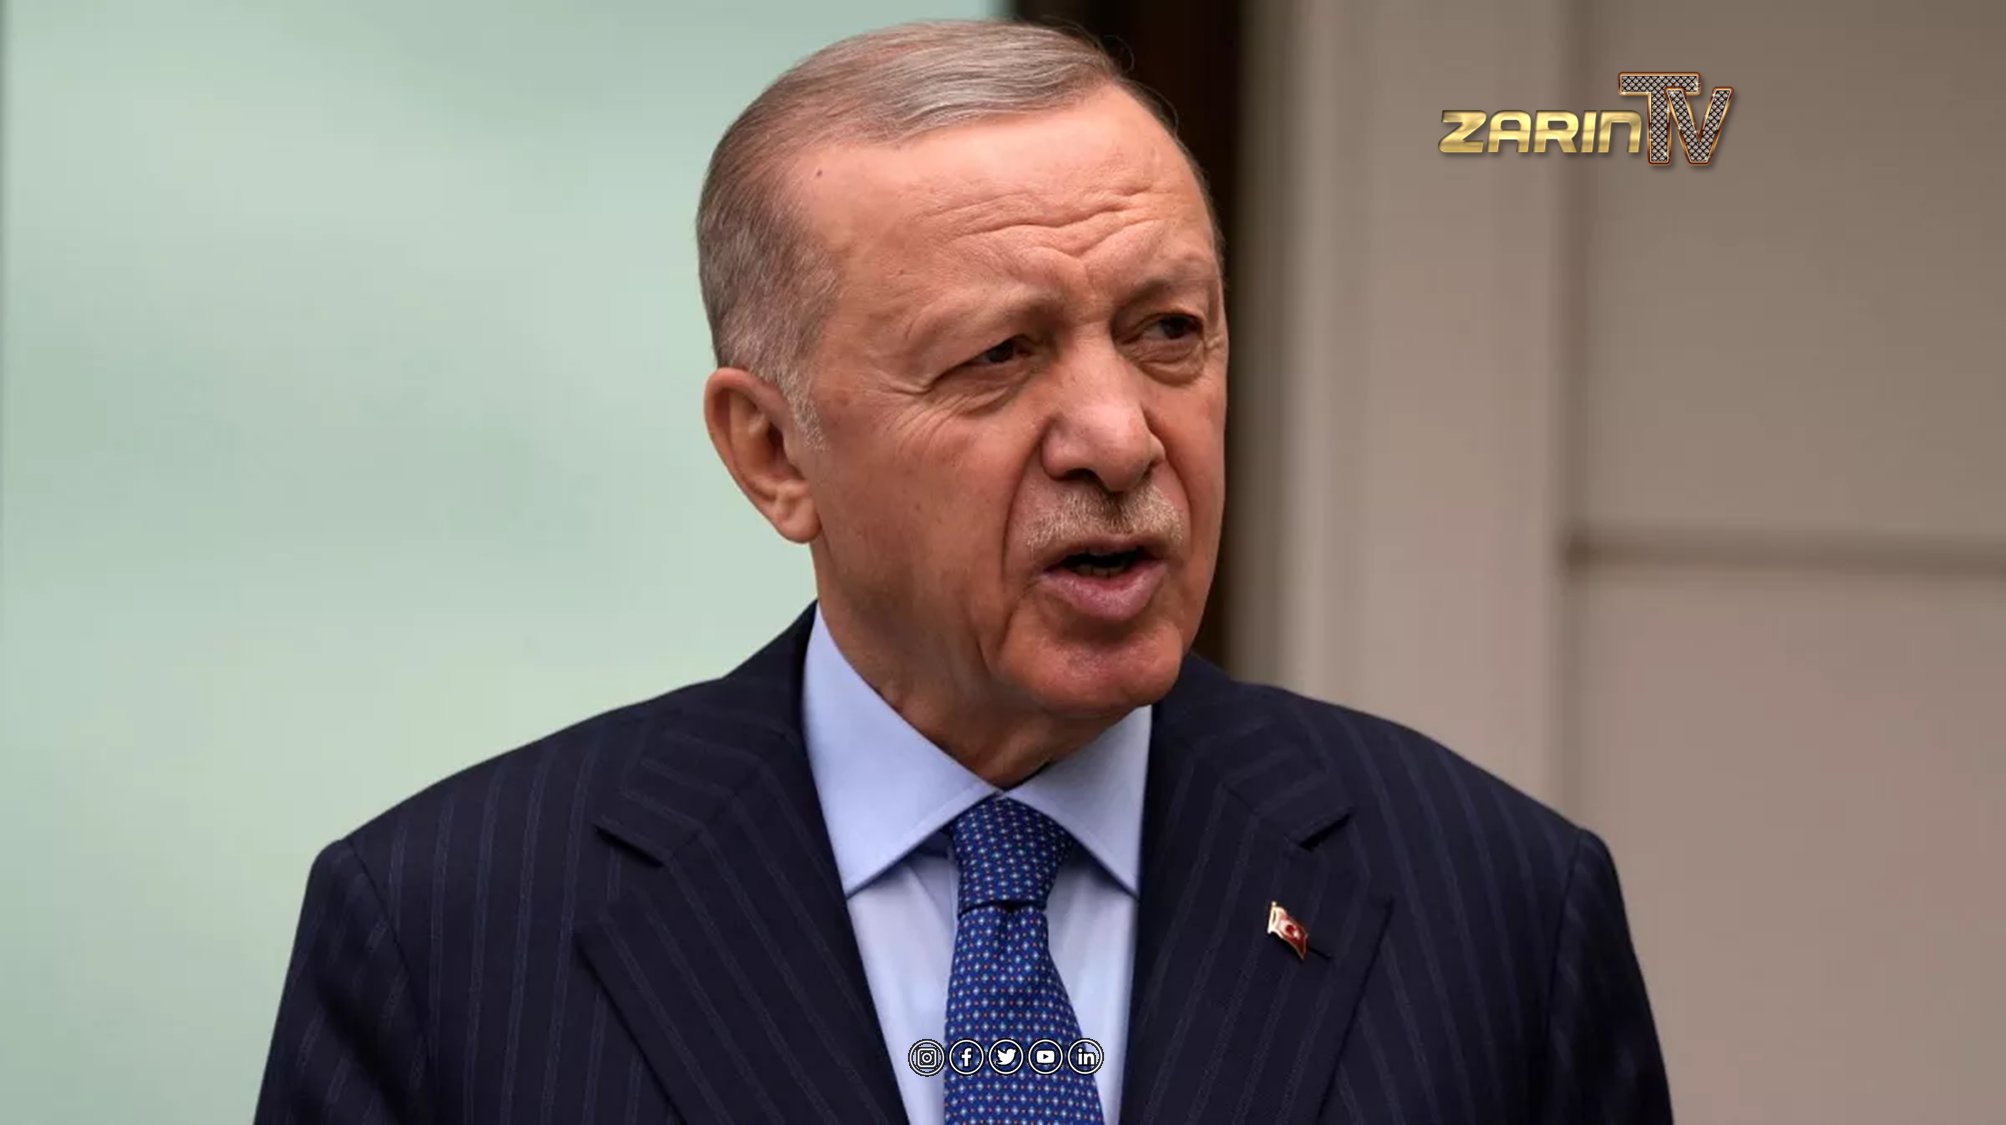 Turkey’s President Erdogan: No Desire for Conflict, Halts Trade with Israel